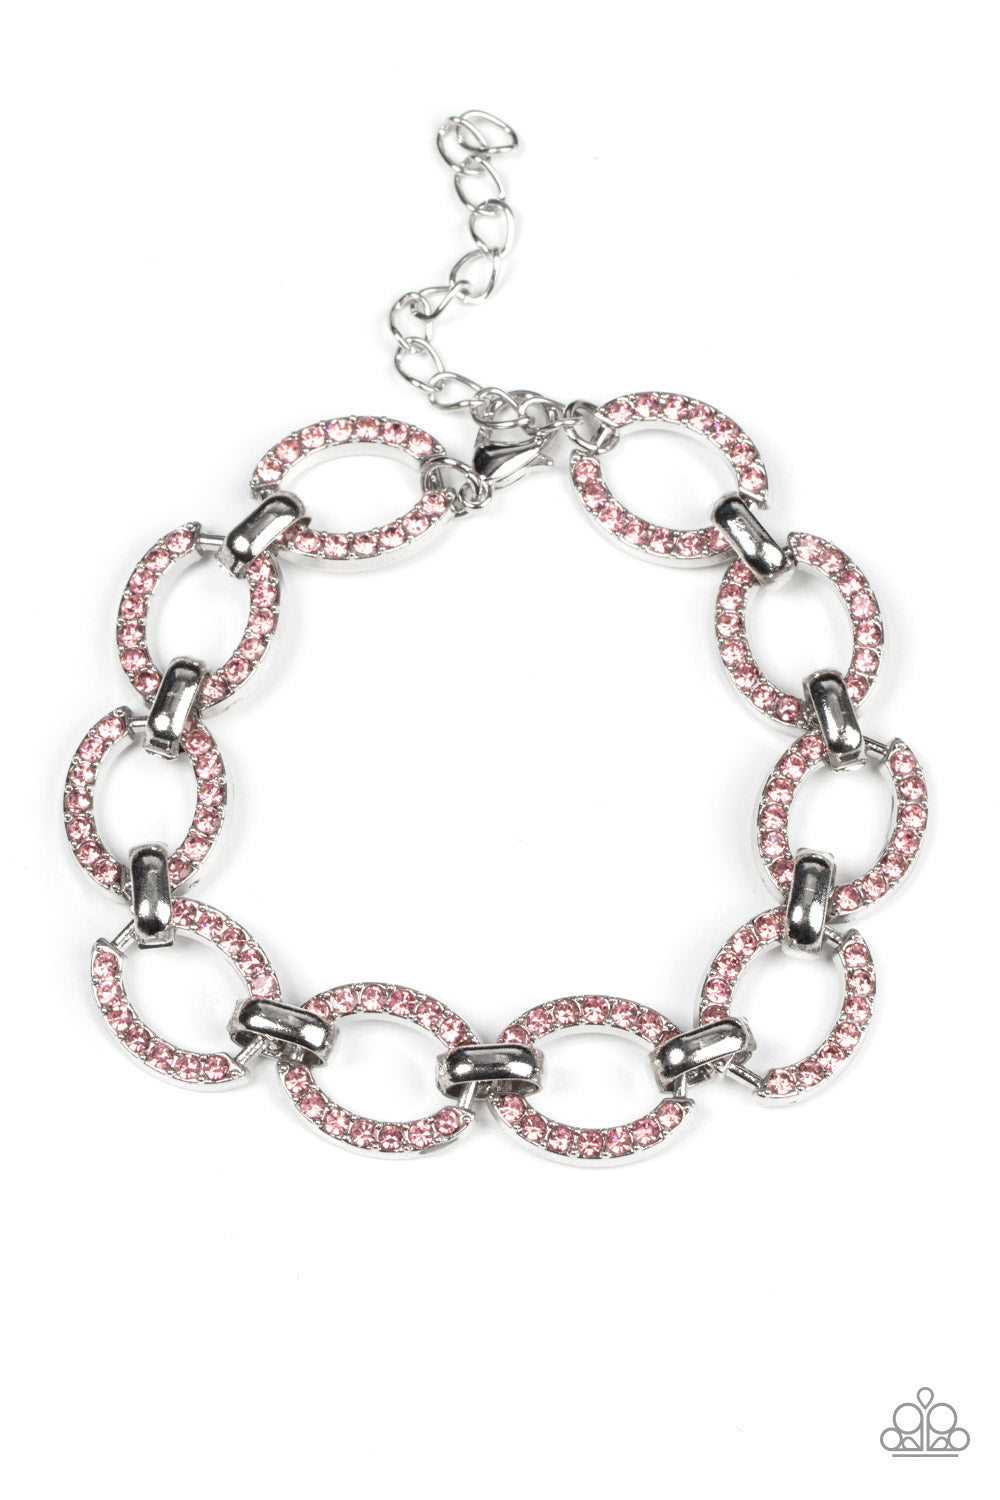 Date Night Debonair - Pink bracelet